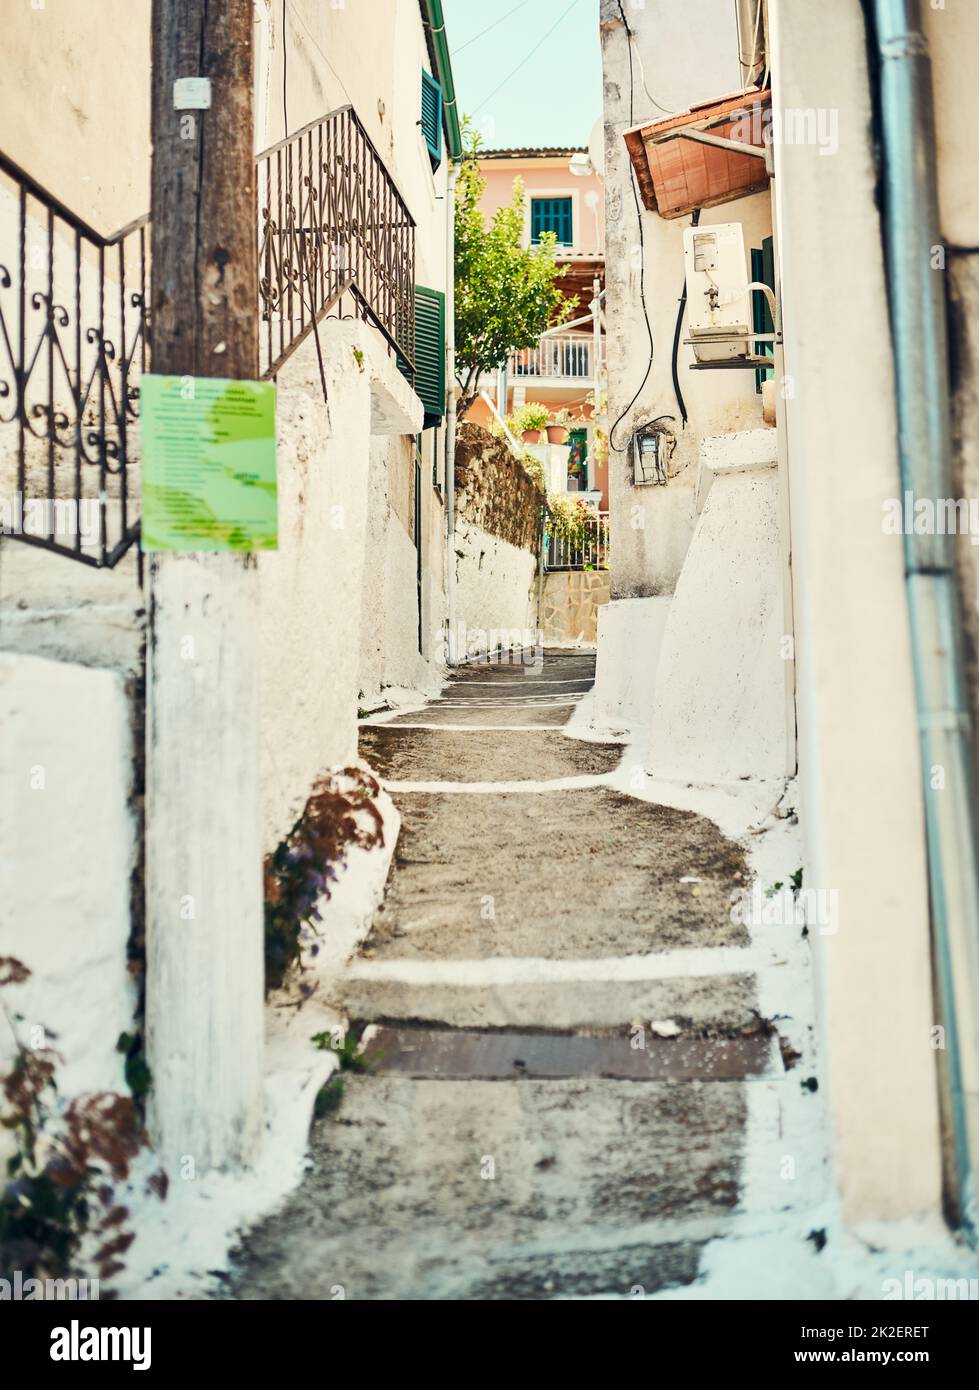 Entra in un villaggio rustico. Foto di gradini tra edifici in un'antica città straniera. Foto Stock